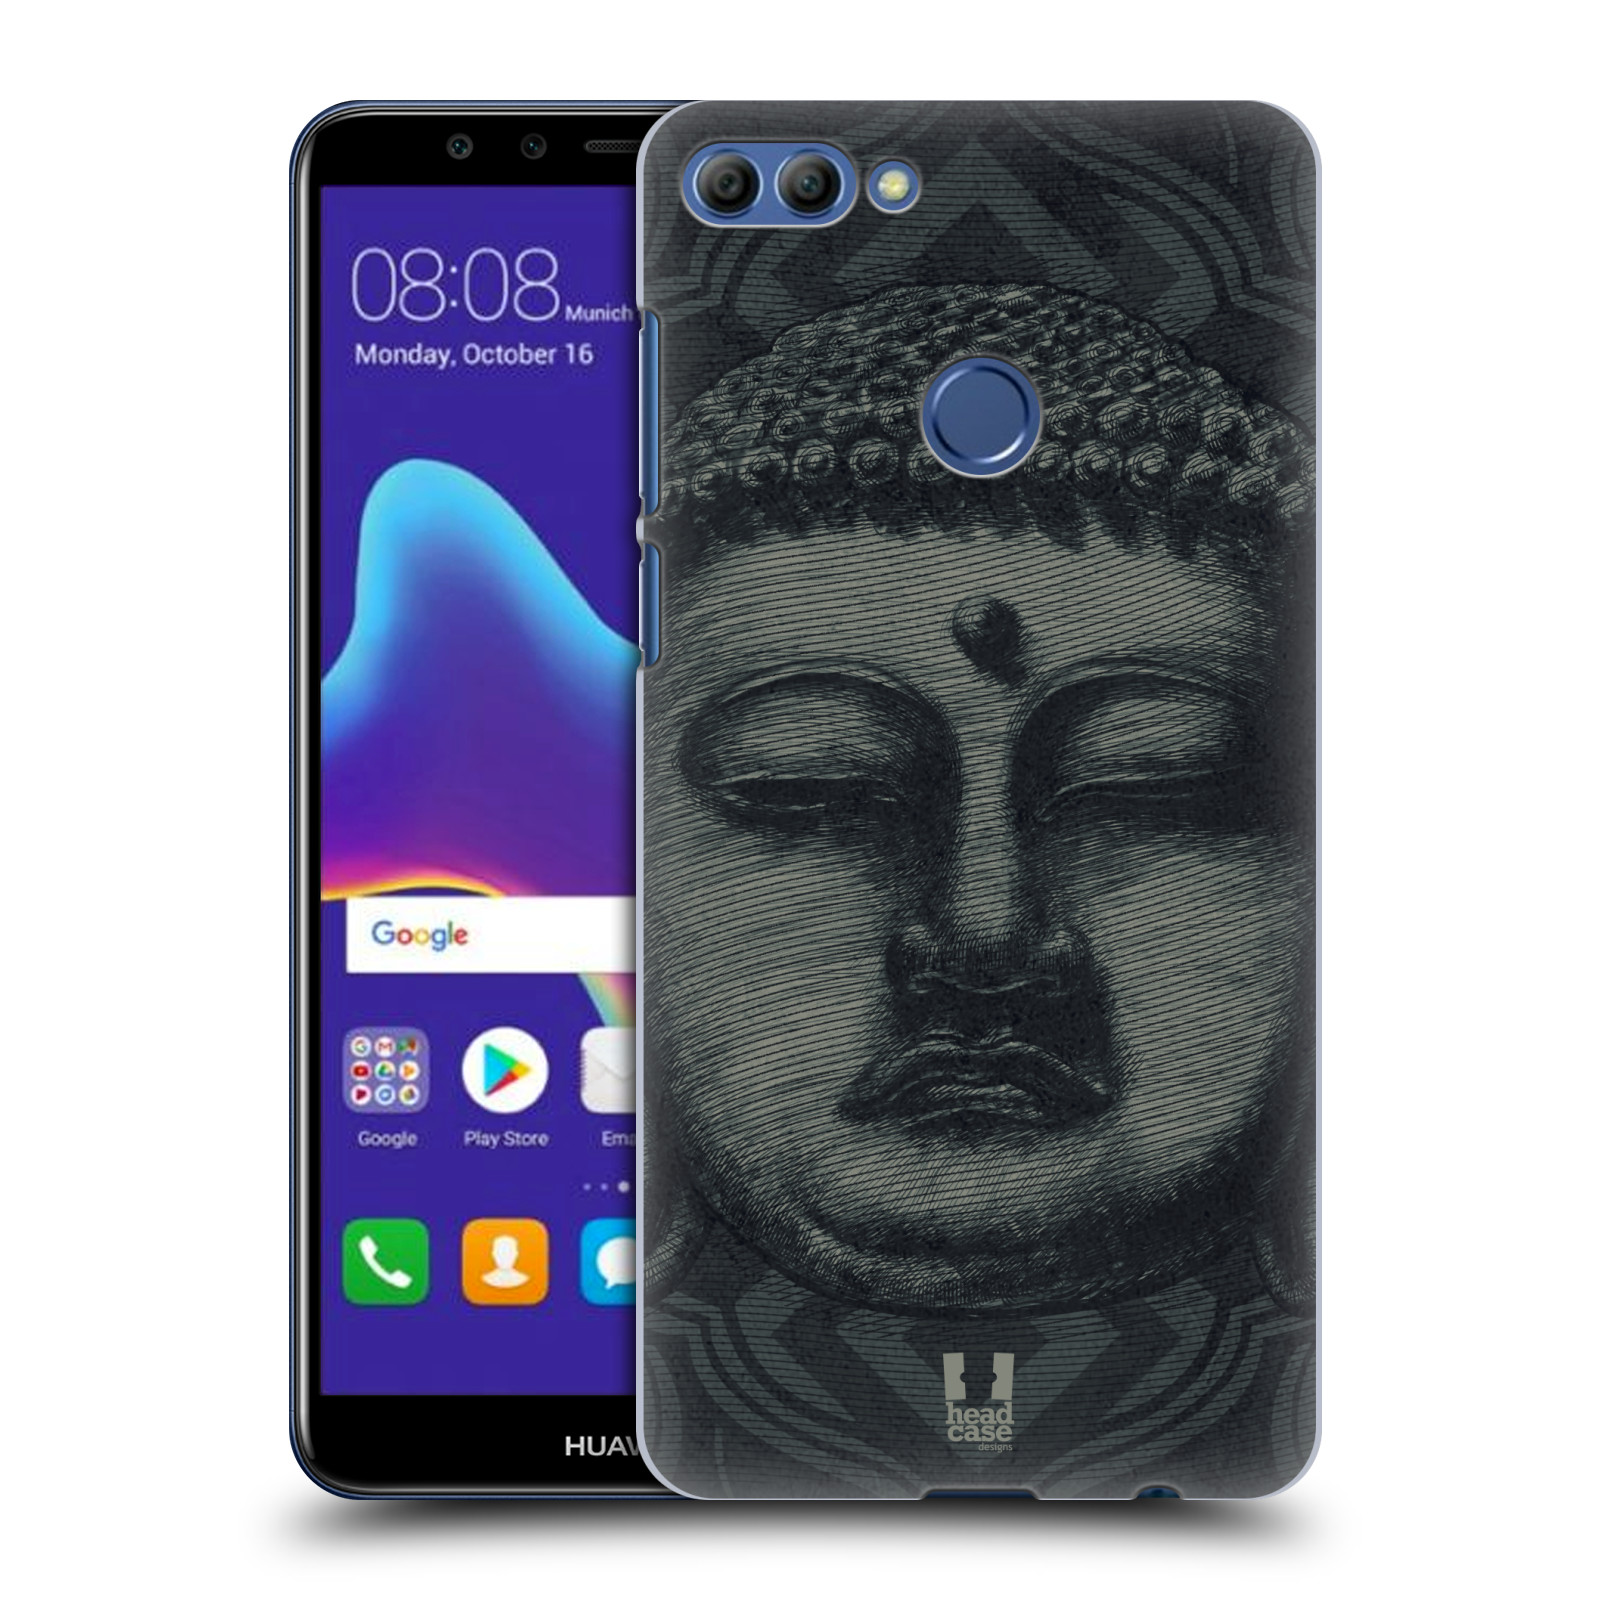 HEAD CASE plastový obal na mobil Huawei Y9 2018 vzor BUDDHA KAMAKURA tvář